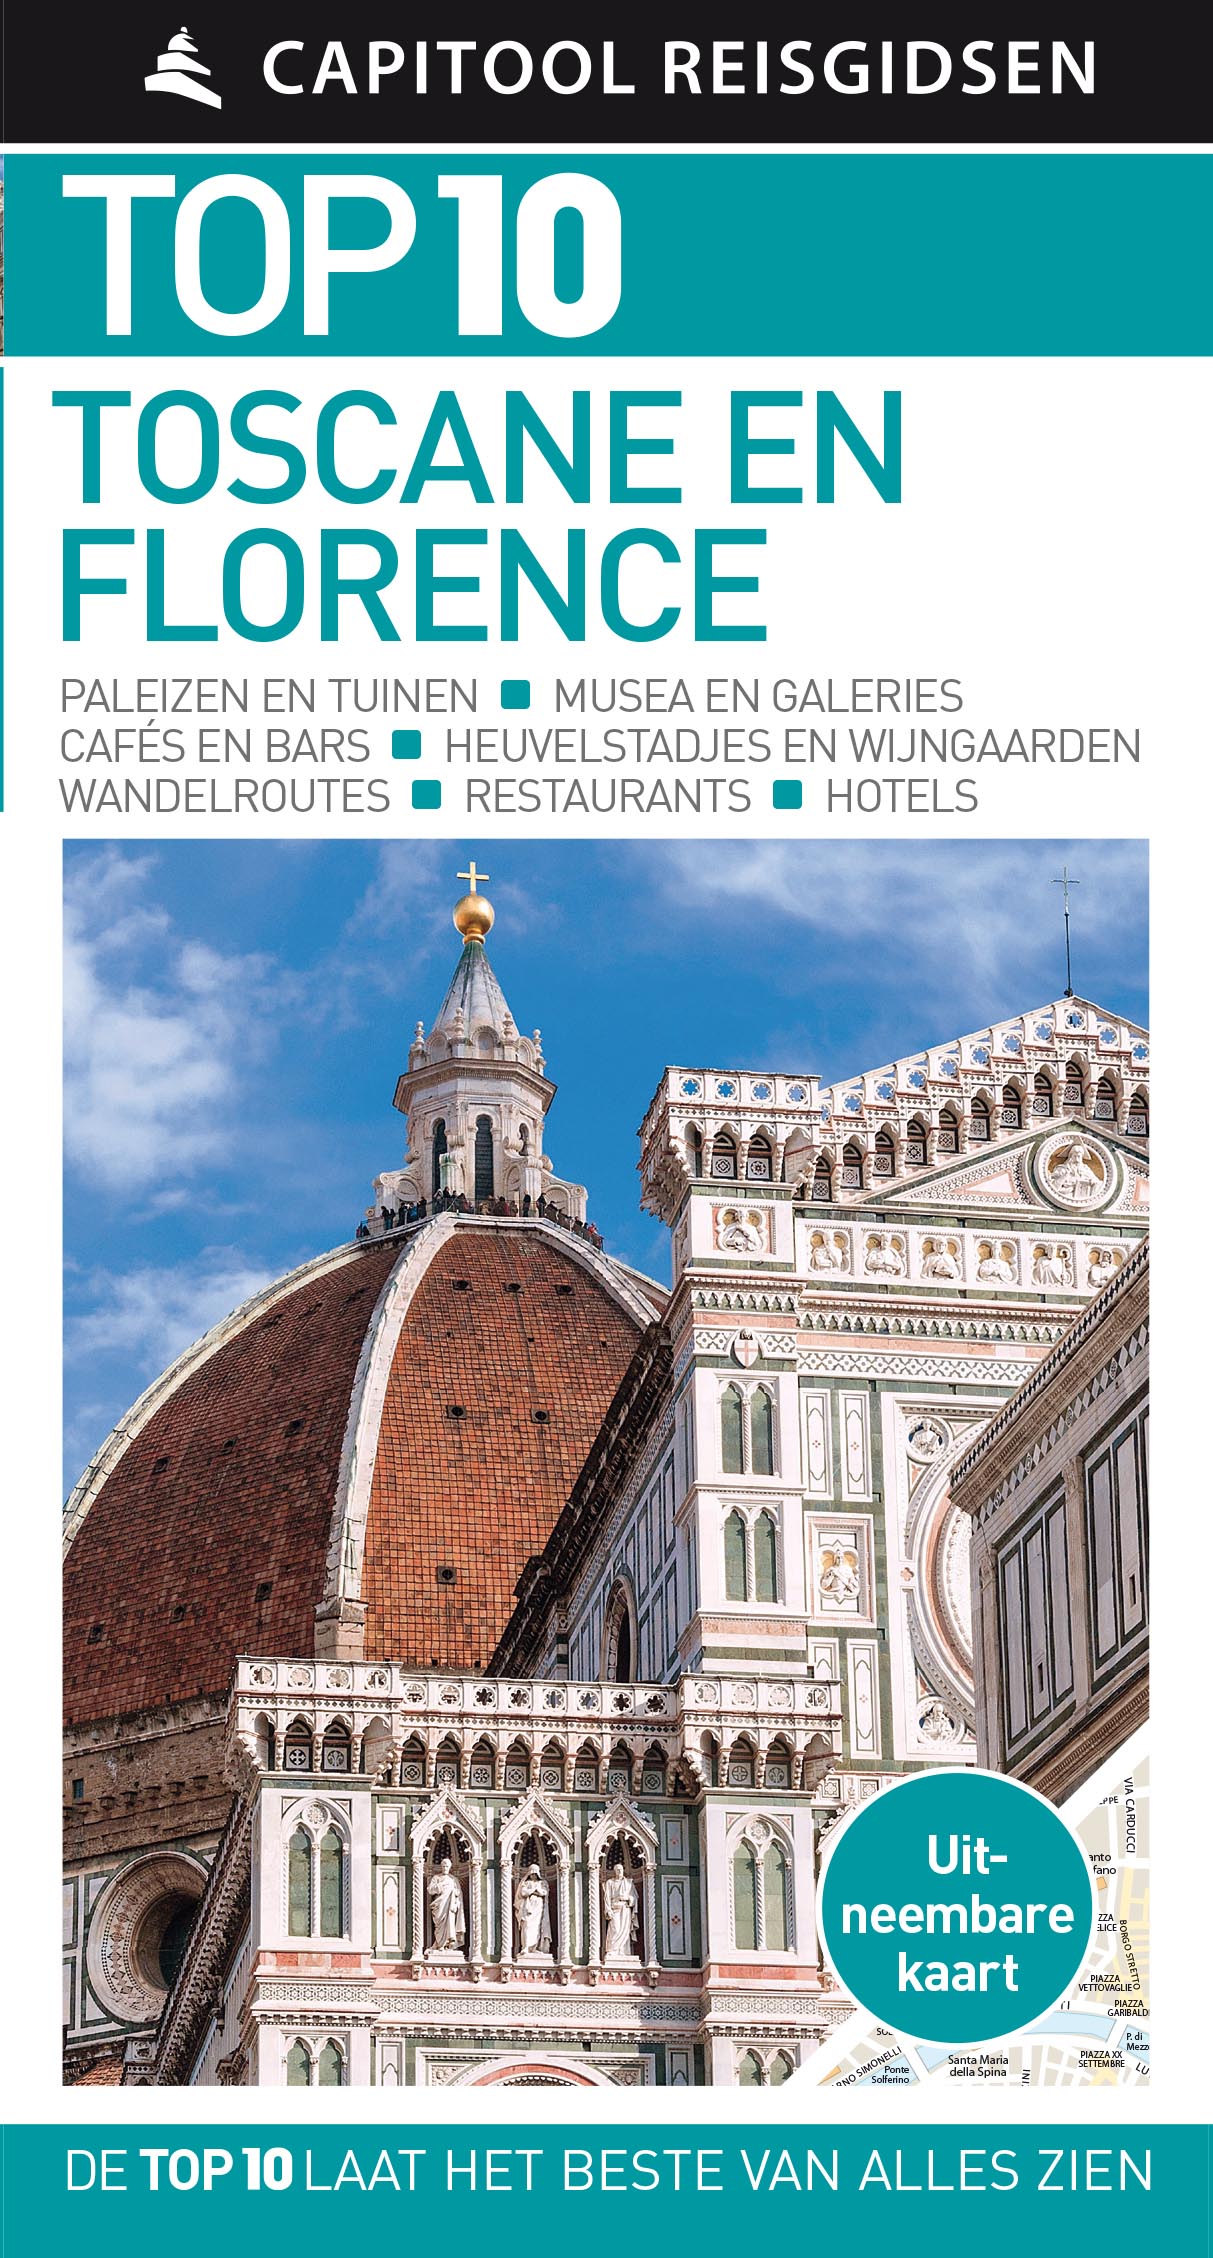 Online bestellen: Reisgids Capitool Top 10 Toscane en Florence | Unieboek